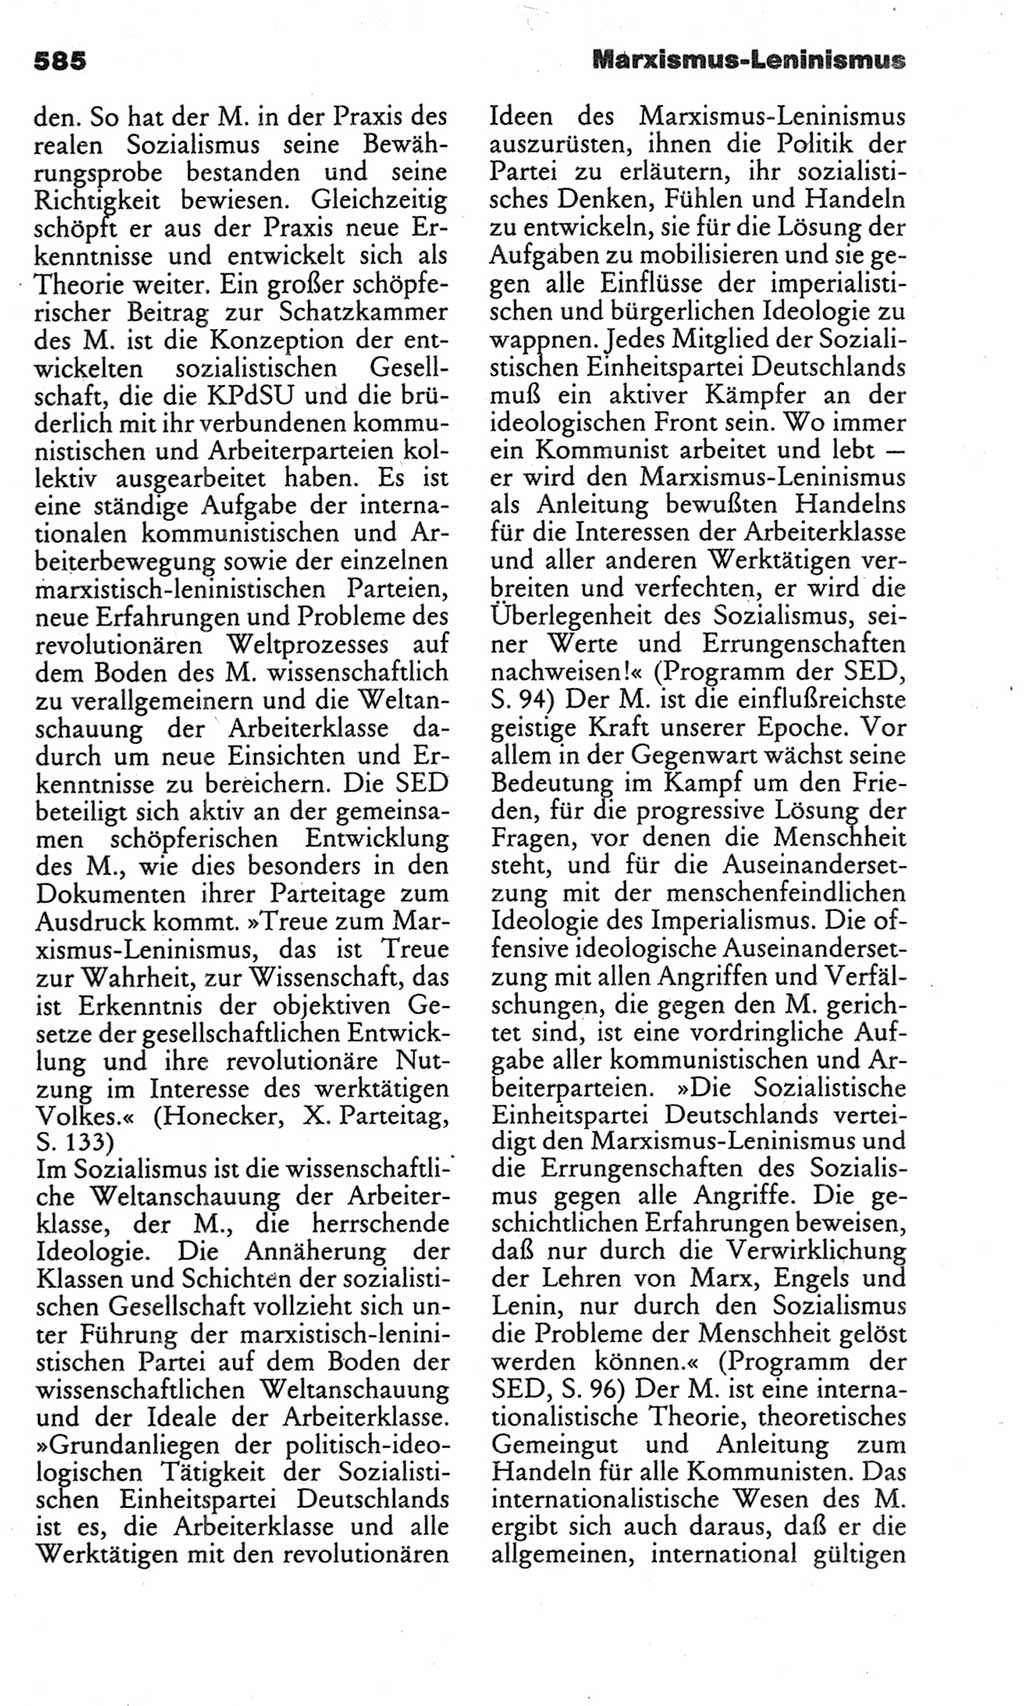 Kleines politisches Wörterbuch [Deutsche Demokratische Republik (DDR)] 1983, Seite 585 (Kl. pol. Wb. DDR 1983, S. 585)